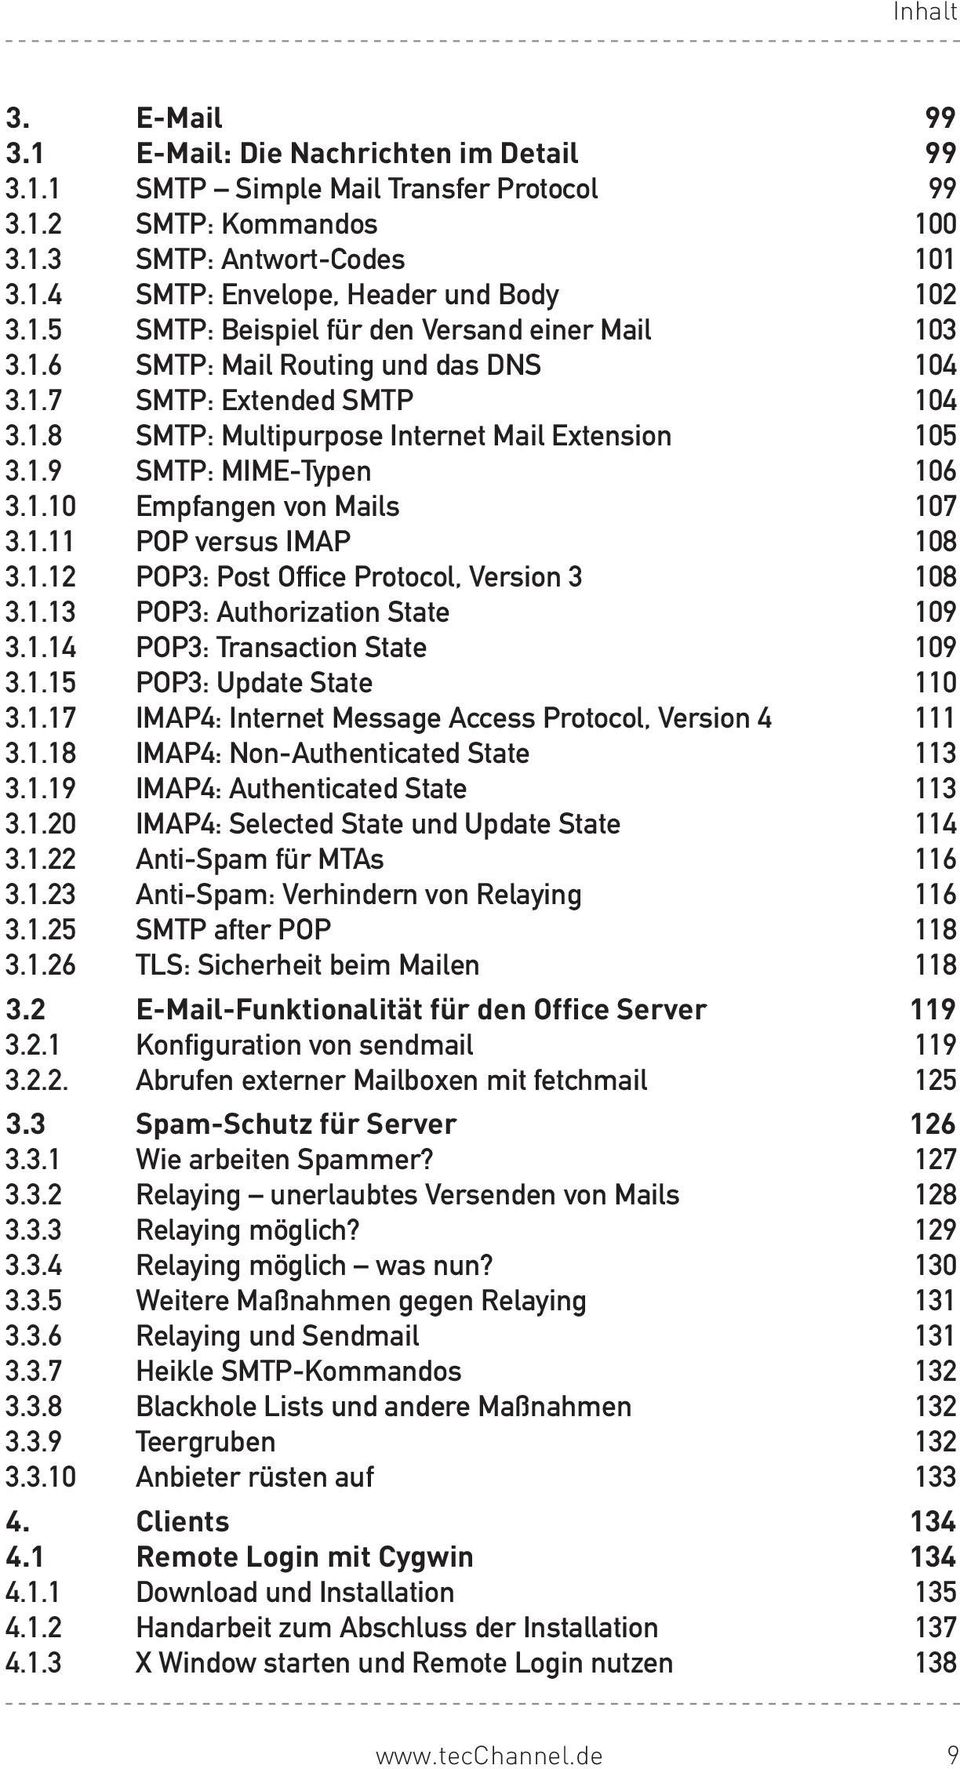 1.10 Empfangen von Mails 107 3.1.11 POP versus IMAP 108 3.1.12 POP3: Post Office Protocol, Version 3 108 3.1.13 POP3: Authorization State 109 3.1.14 POP3: Transaction State 109 3.1.15 POP3: Update State 110 3.